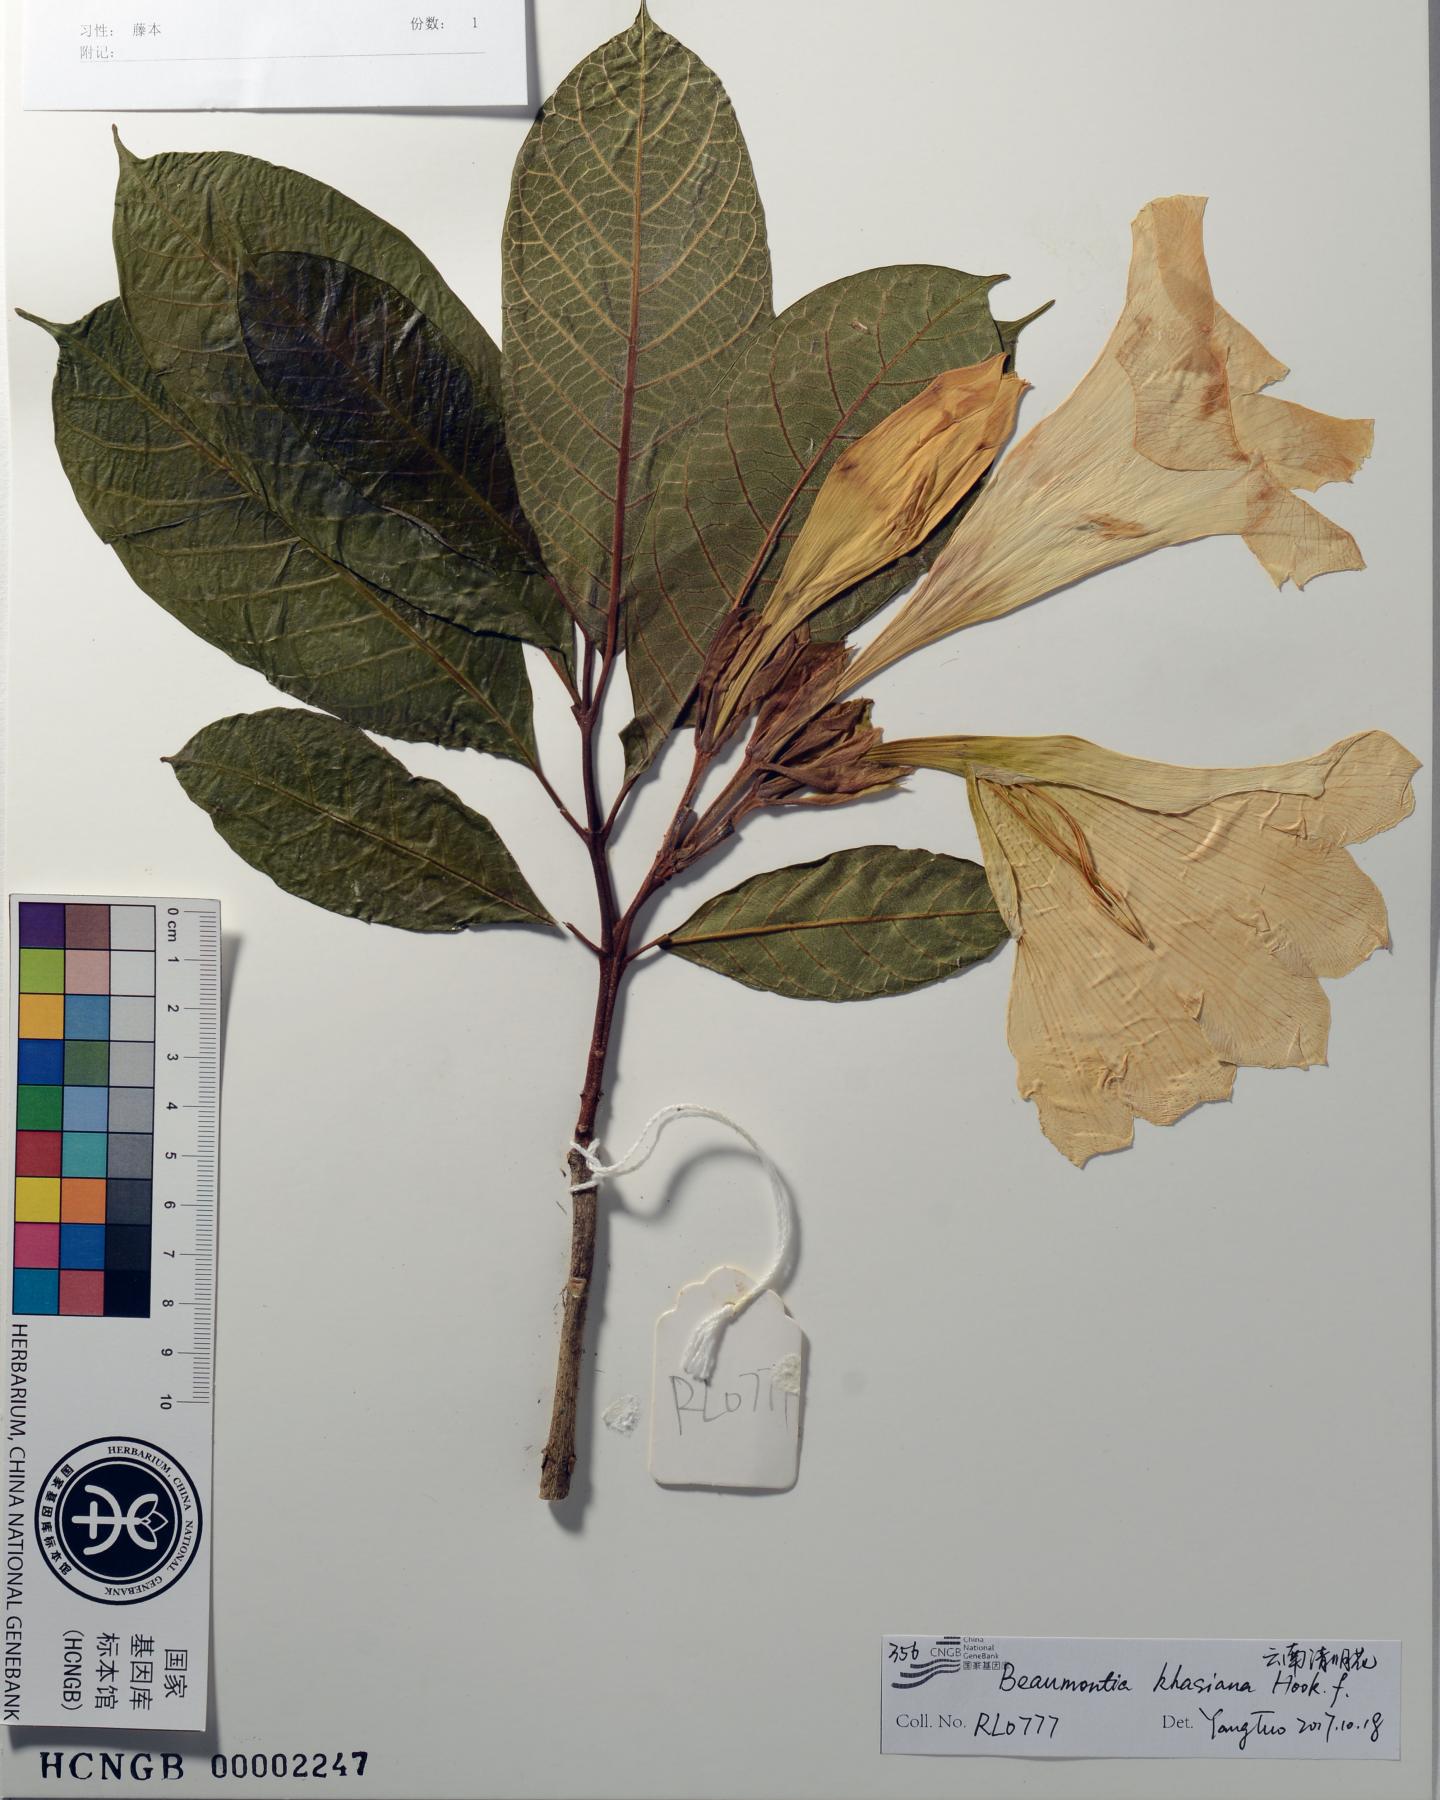 Herbarium Specimen Prepared for Digitization